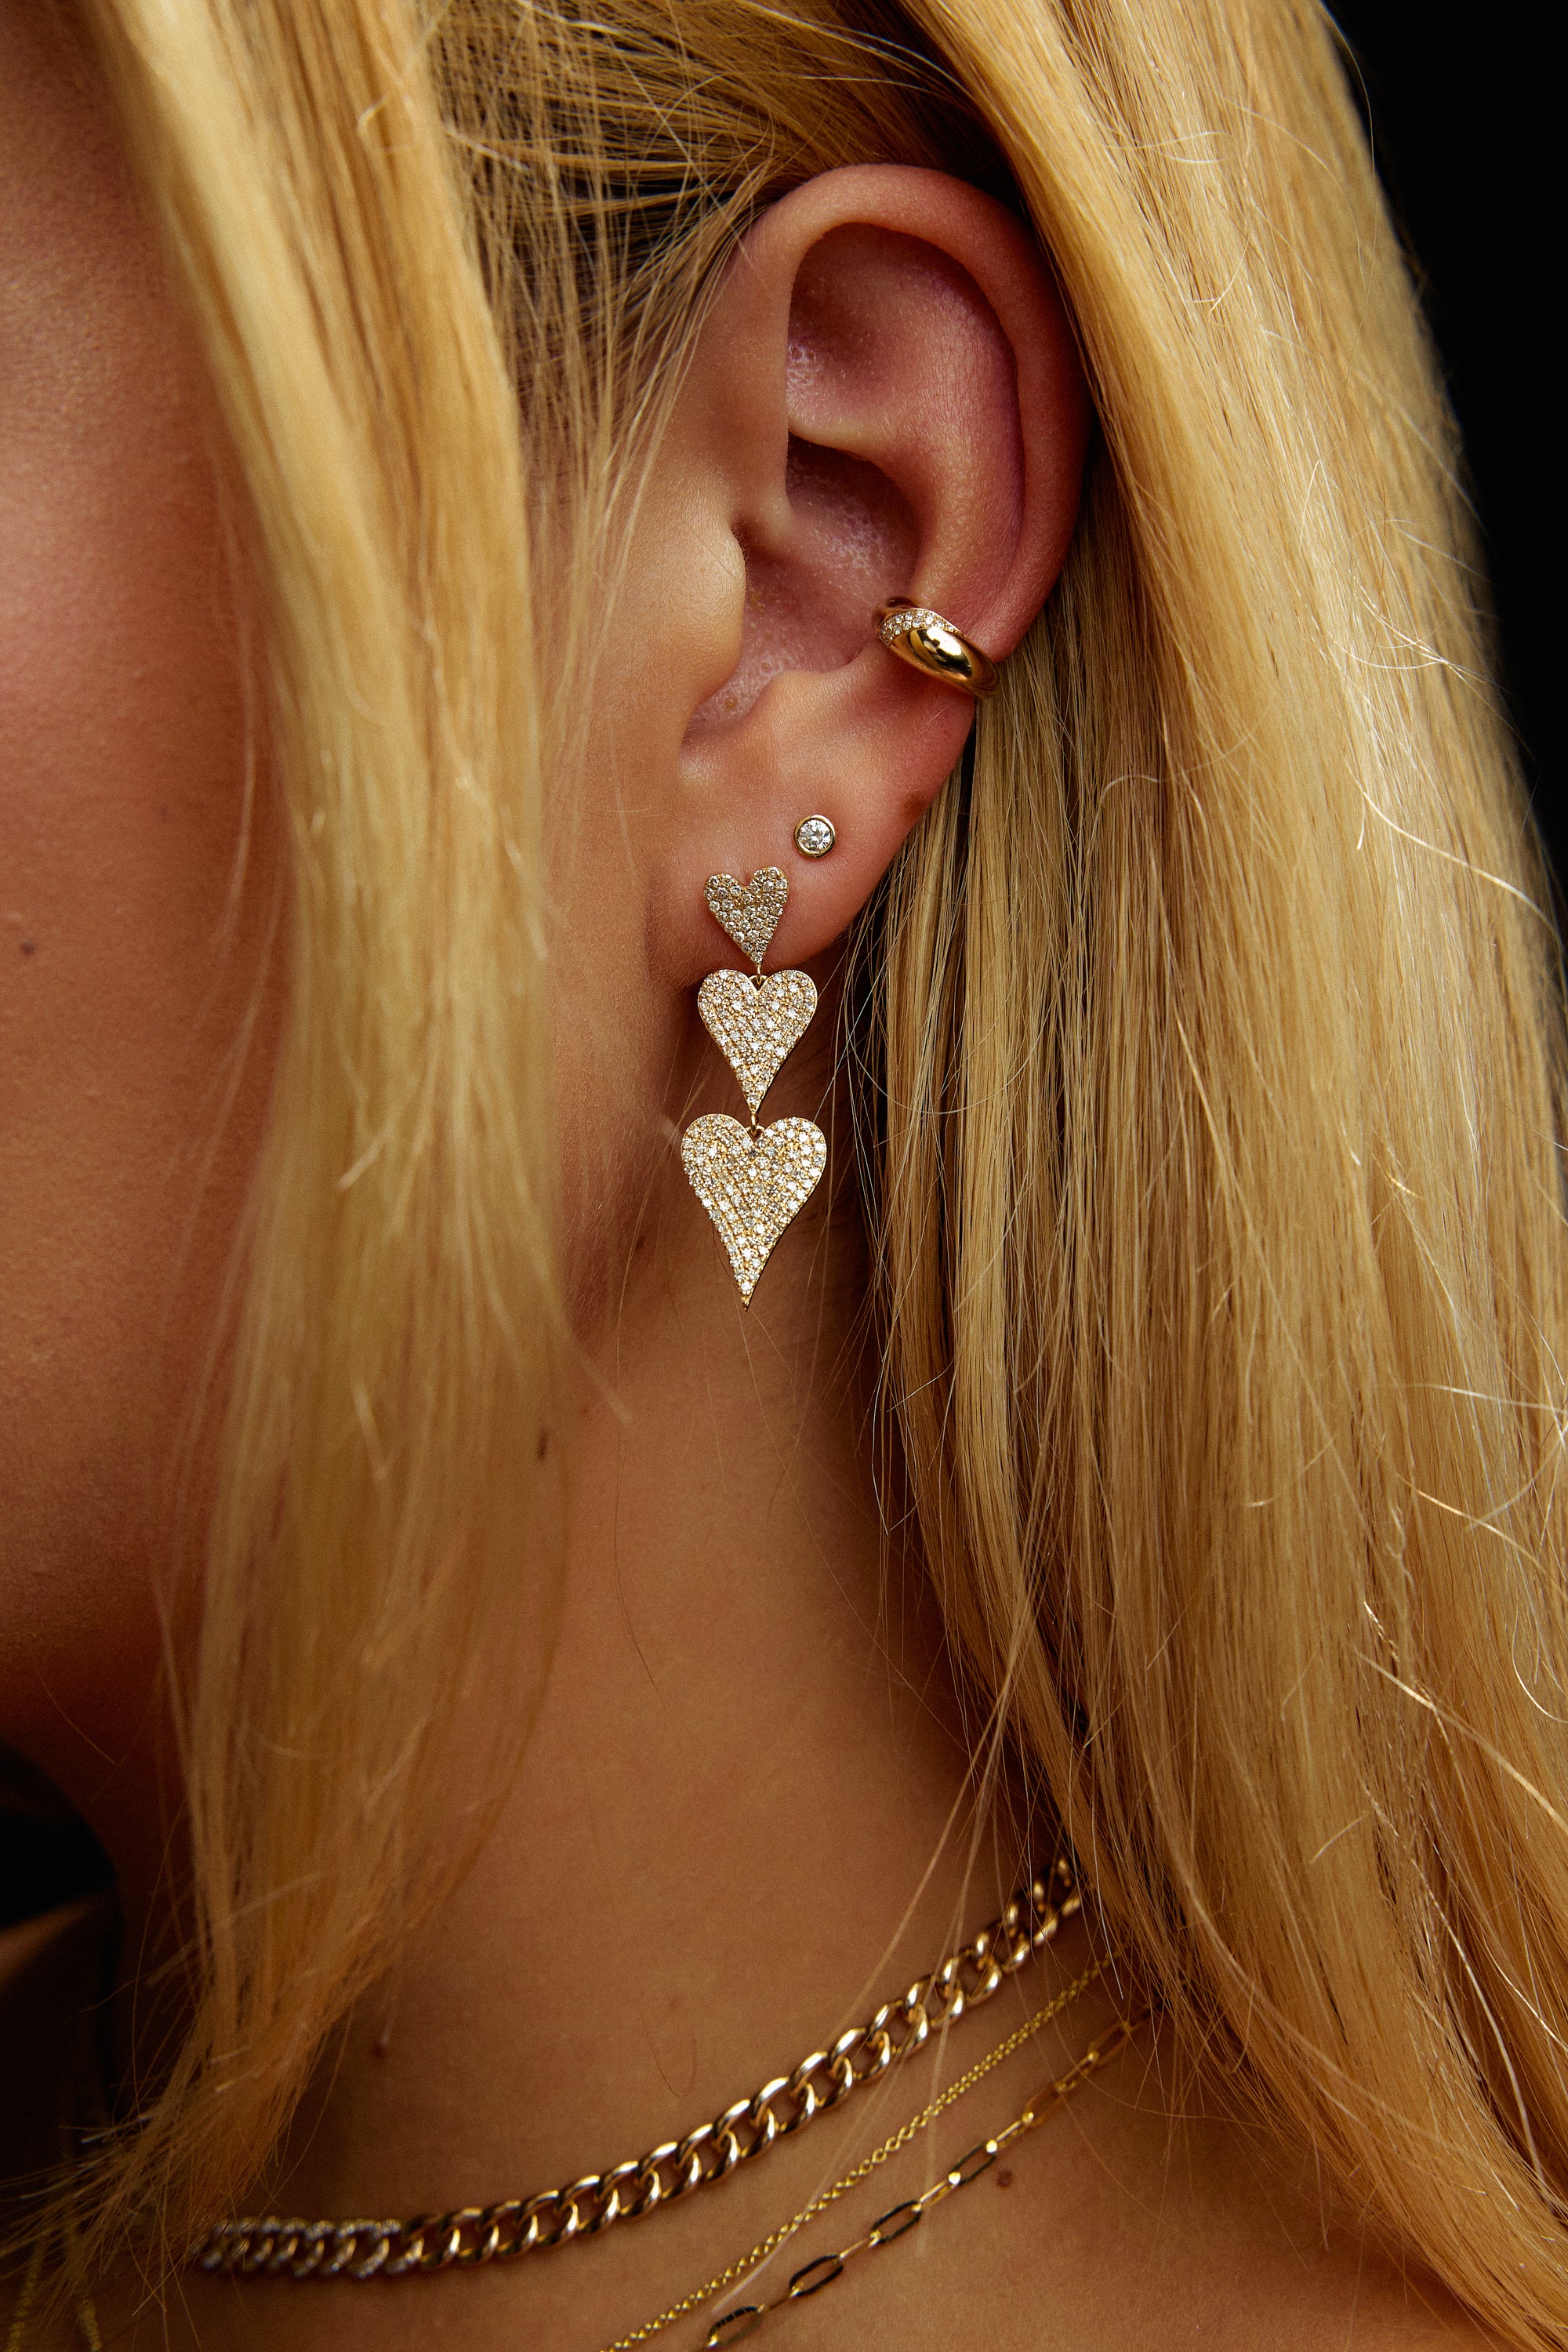 Diamond Heart Drop Earrings